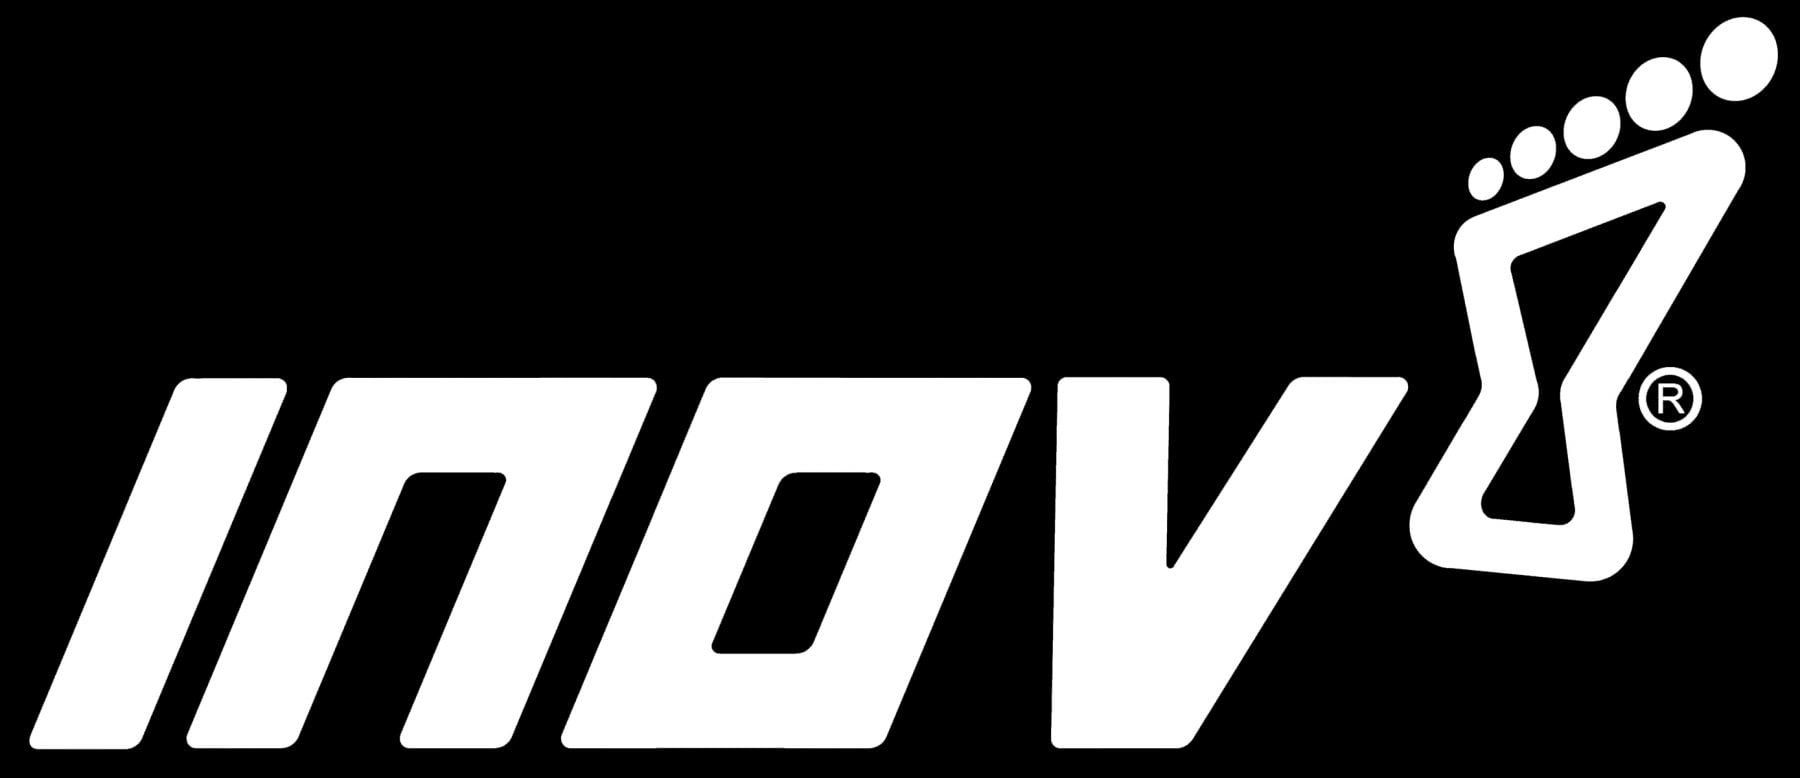 Inov-8 Logo - Inov-8 logo – iRunFar.com